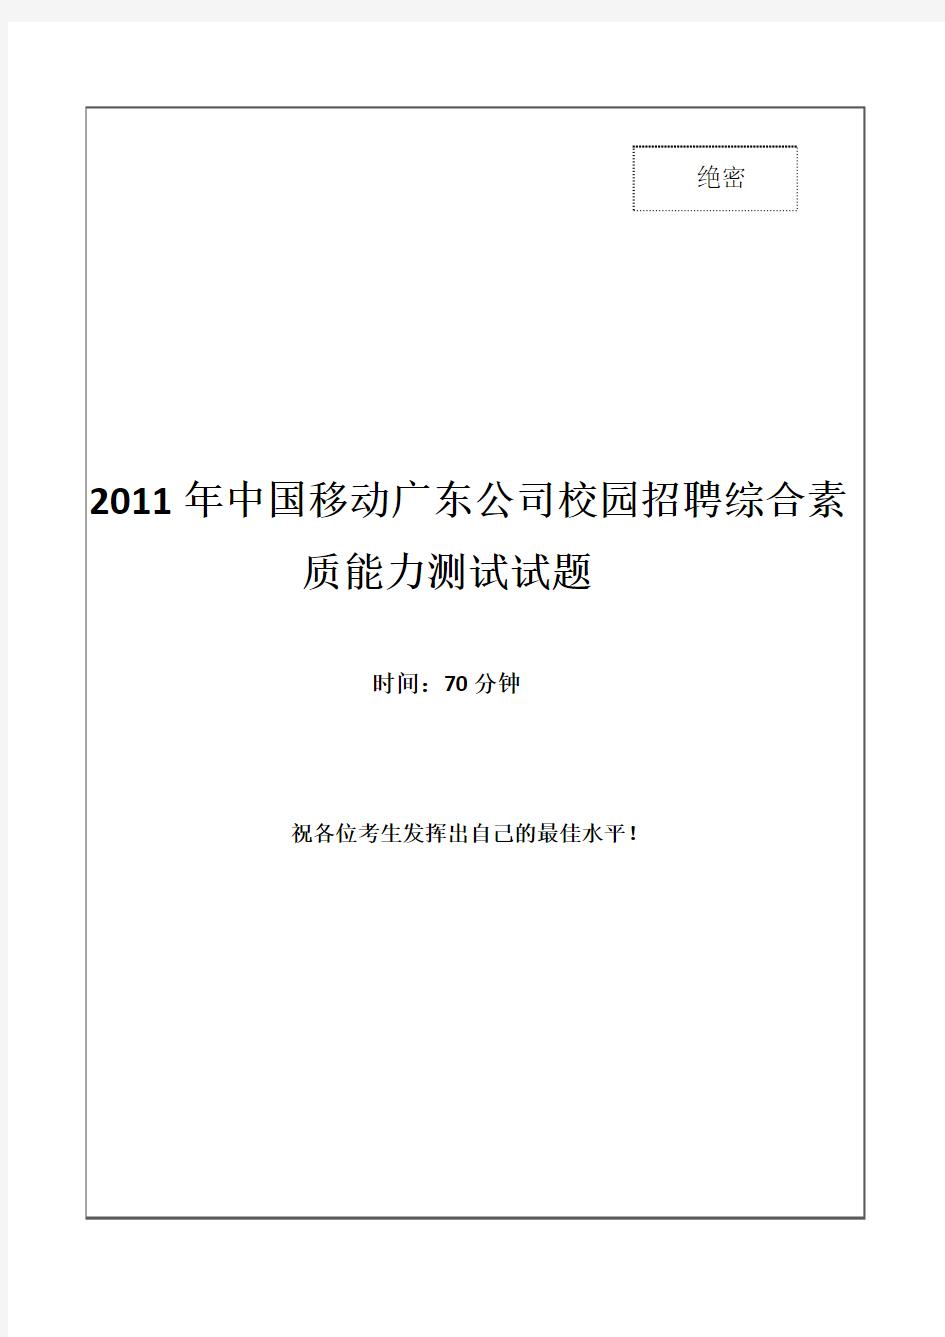 2011年中国移动广东公司招聘笔试试题及答案---